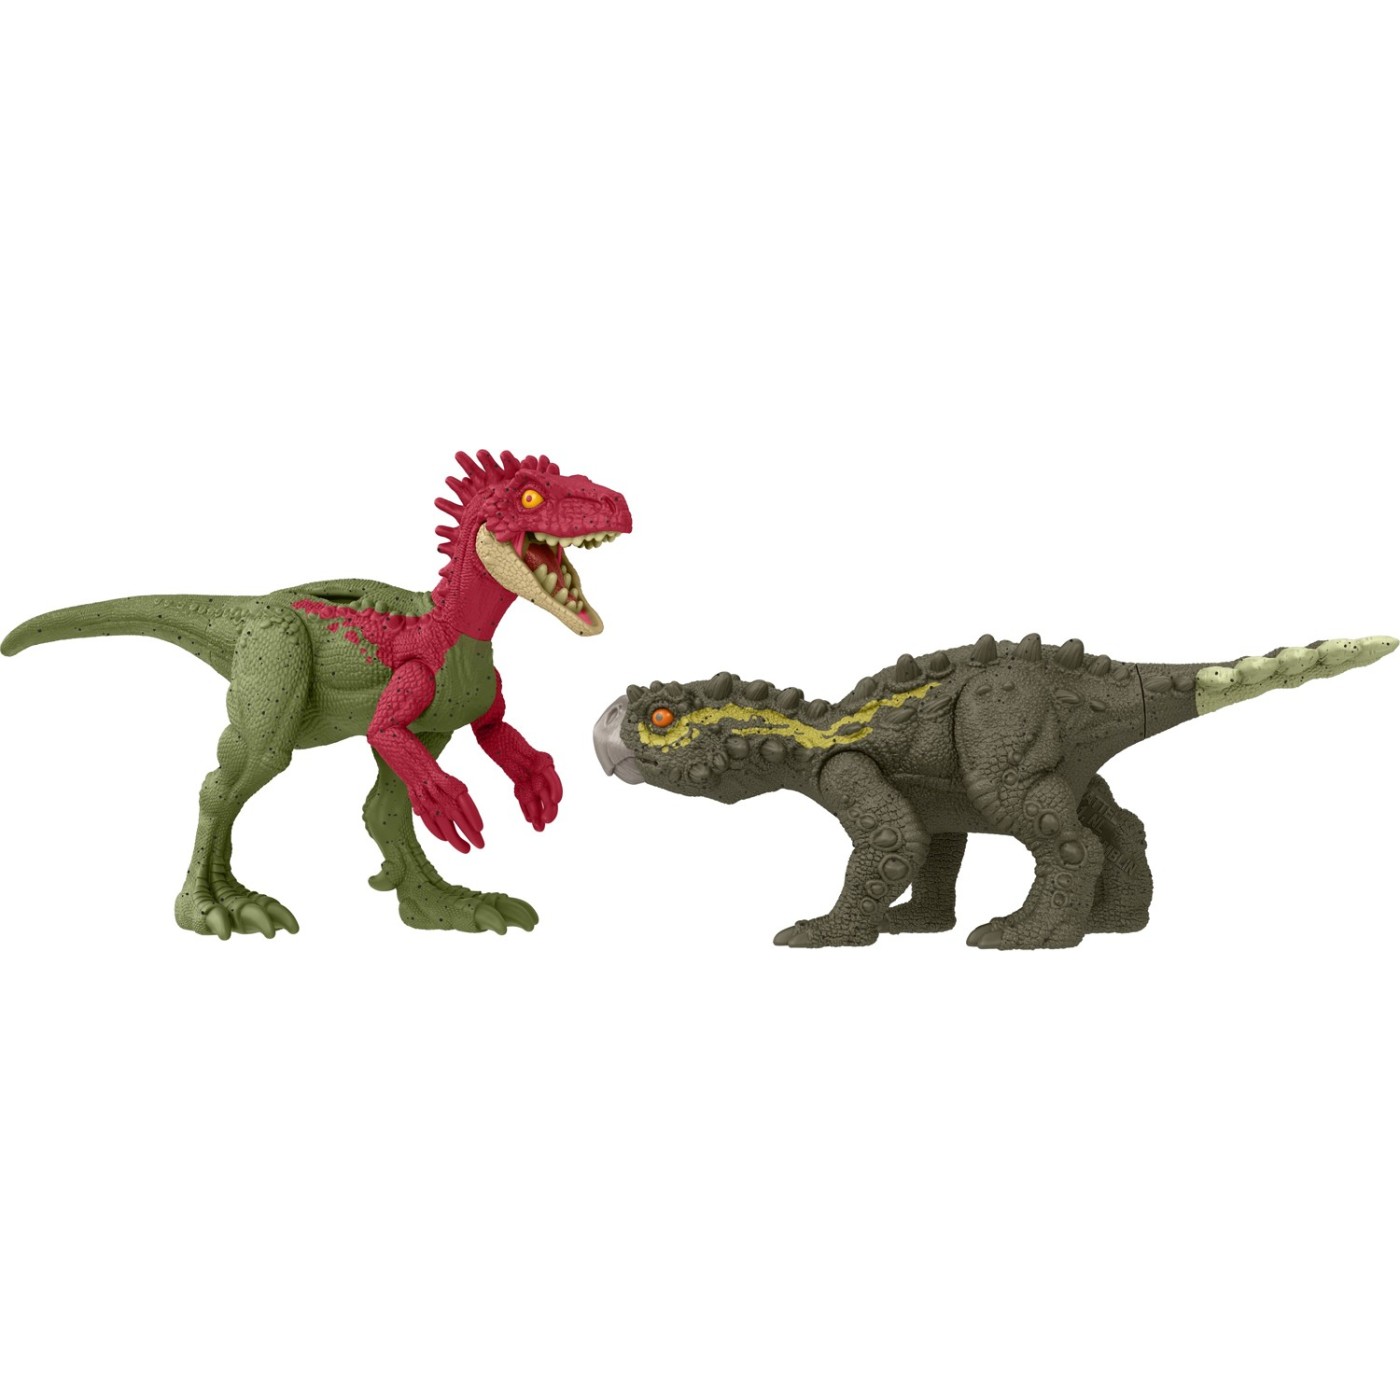 Mattel Βασικές Φιγούρες Δεινοσαύρων Jurassic World Danger Pack Eoraptor Vs. Stegouros (HLN49/HTK47)